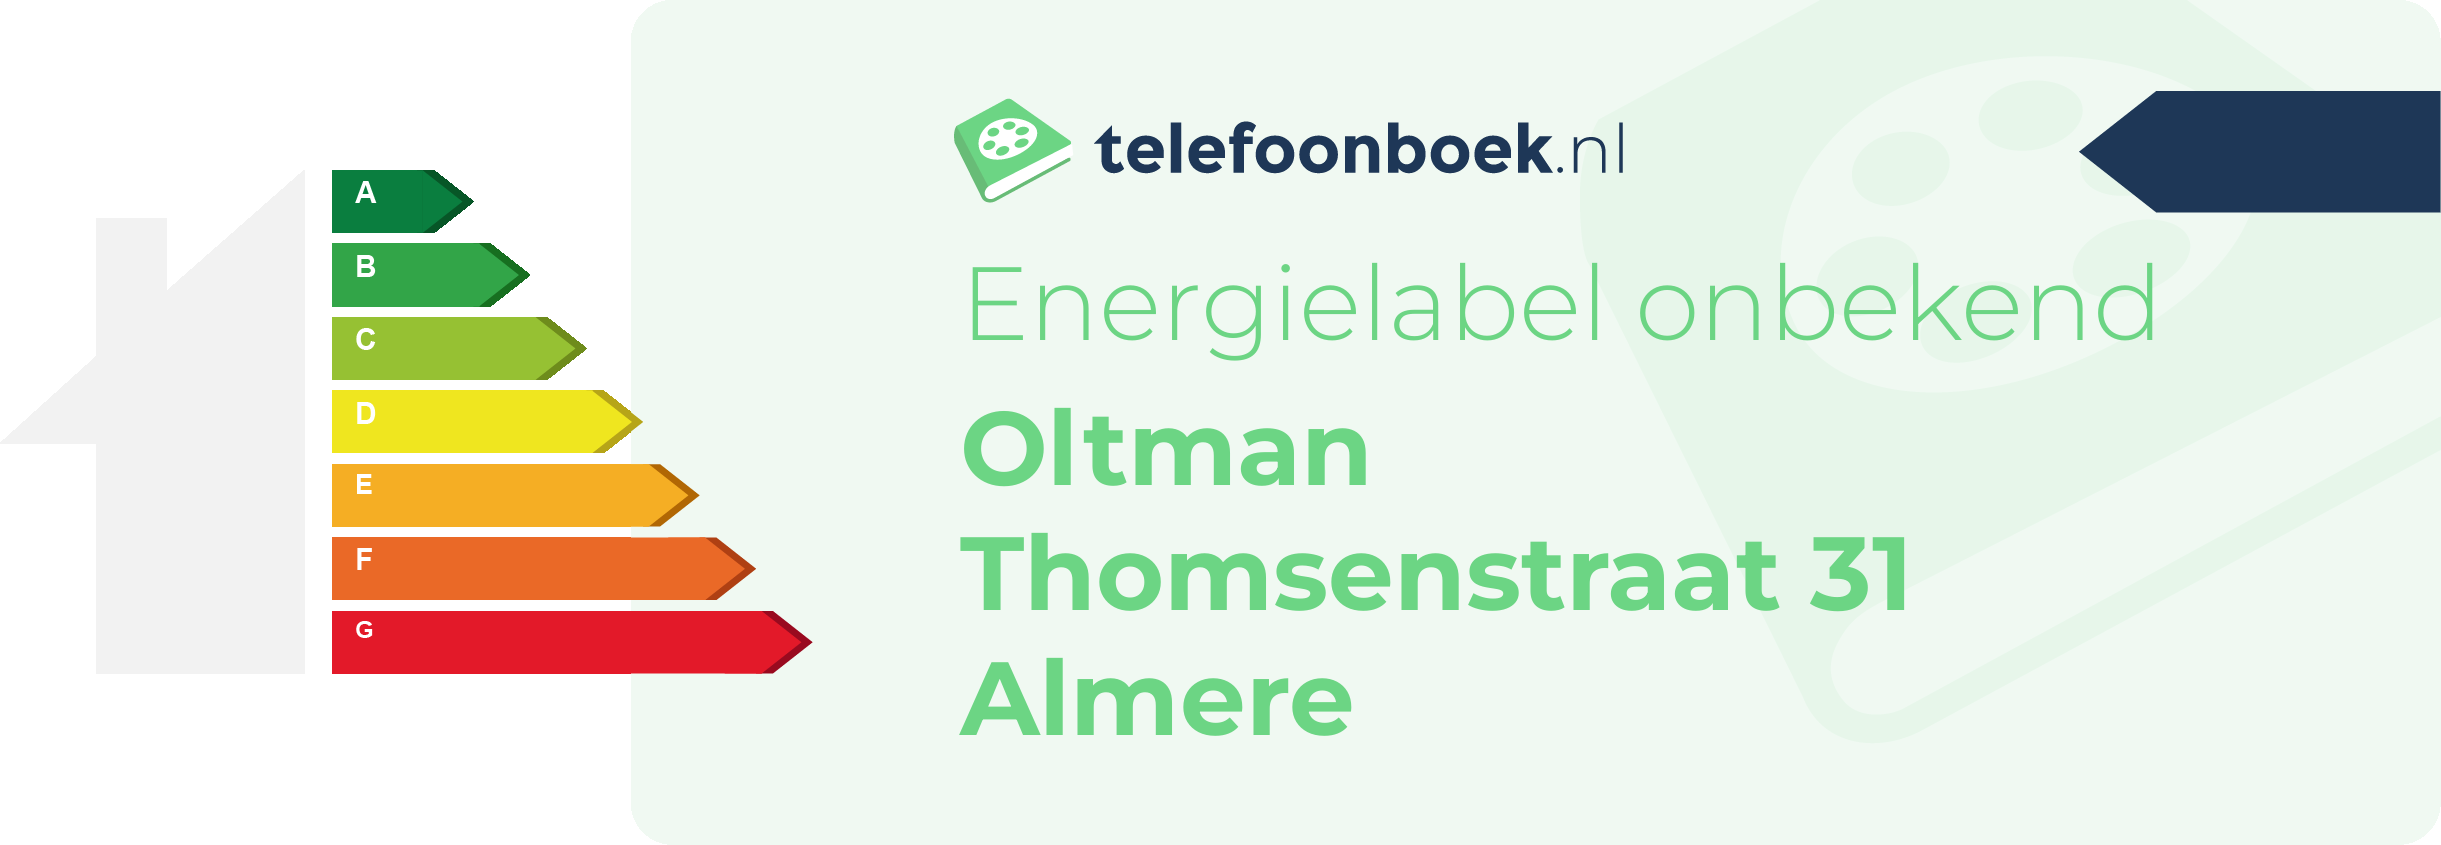 Energielabel Oltman Thomsenstraat 31 Almere